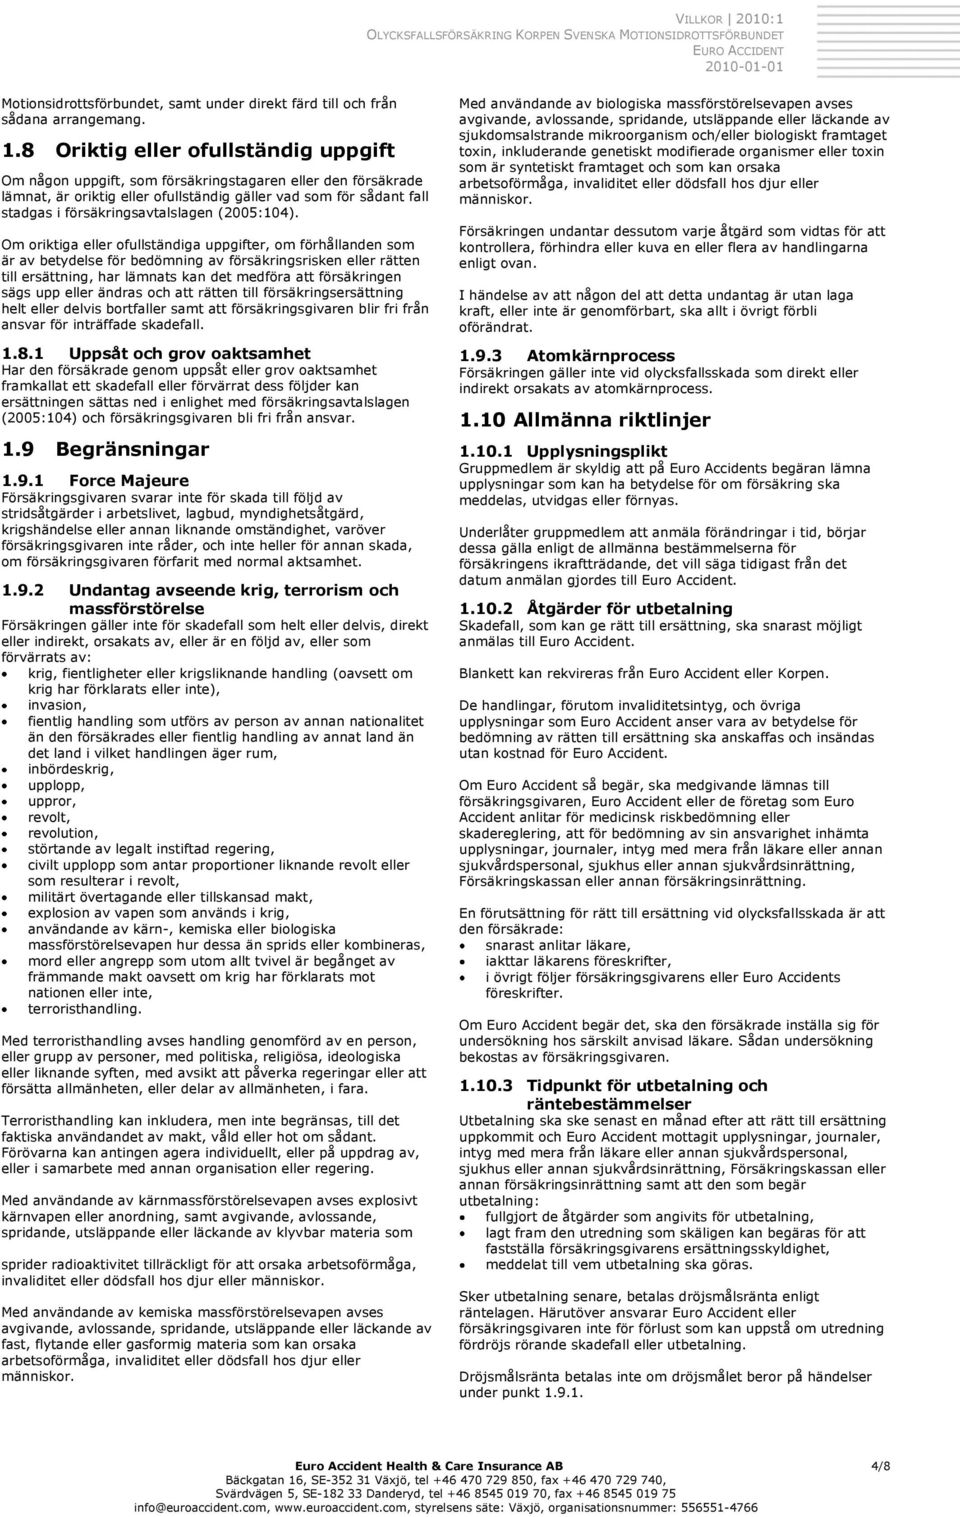 försäkringsavtalslagen (2005:104).